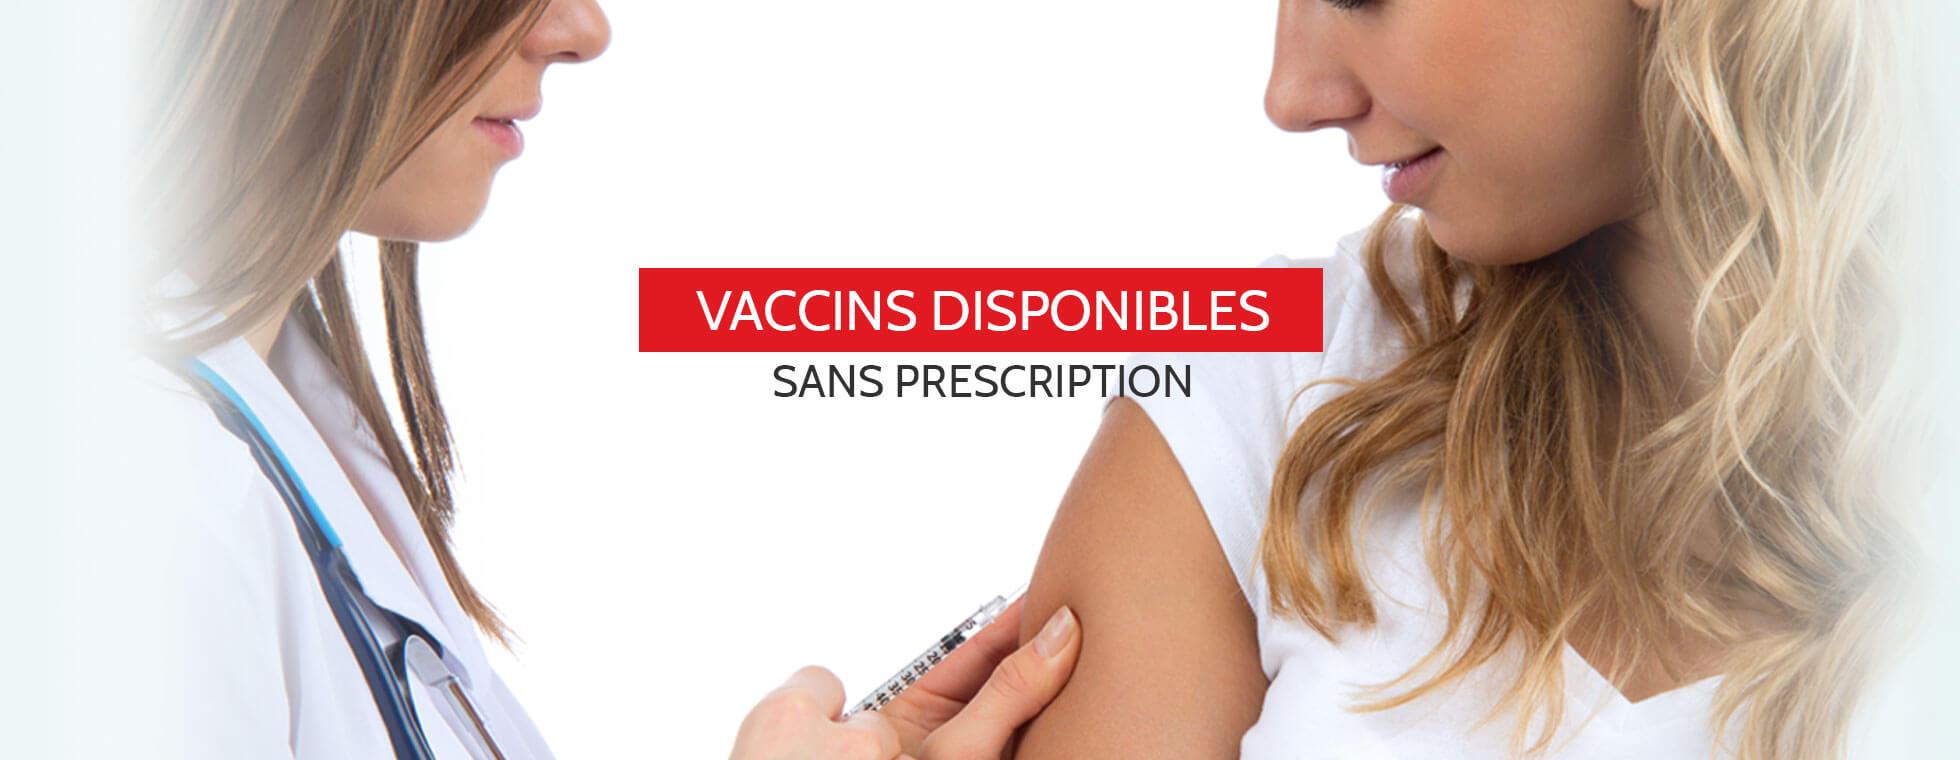 Vaccins disponibles sans prescription